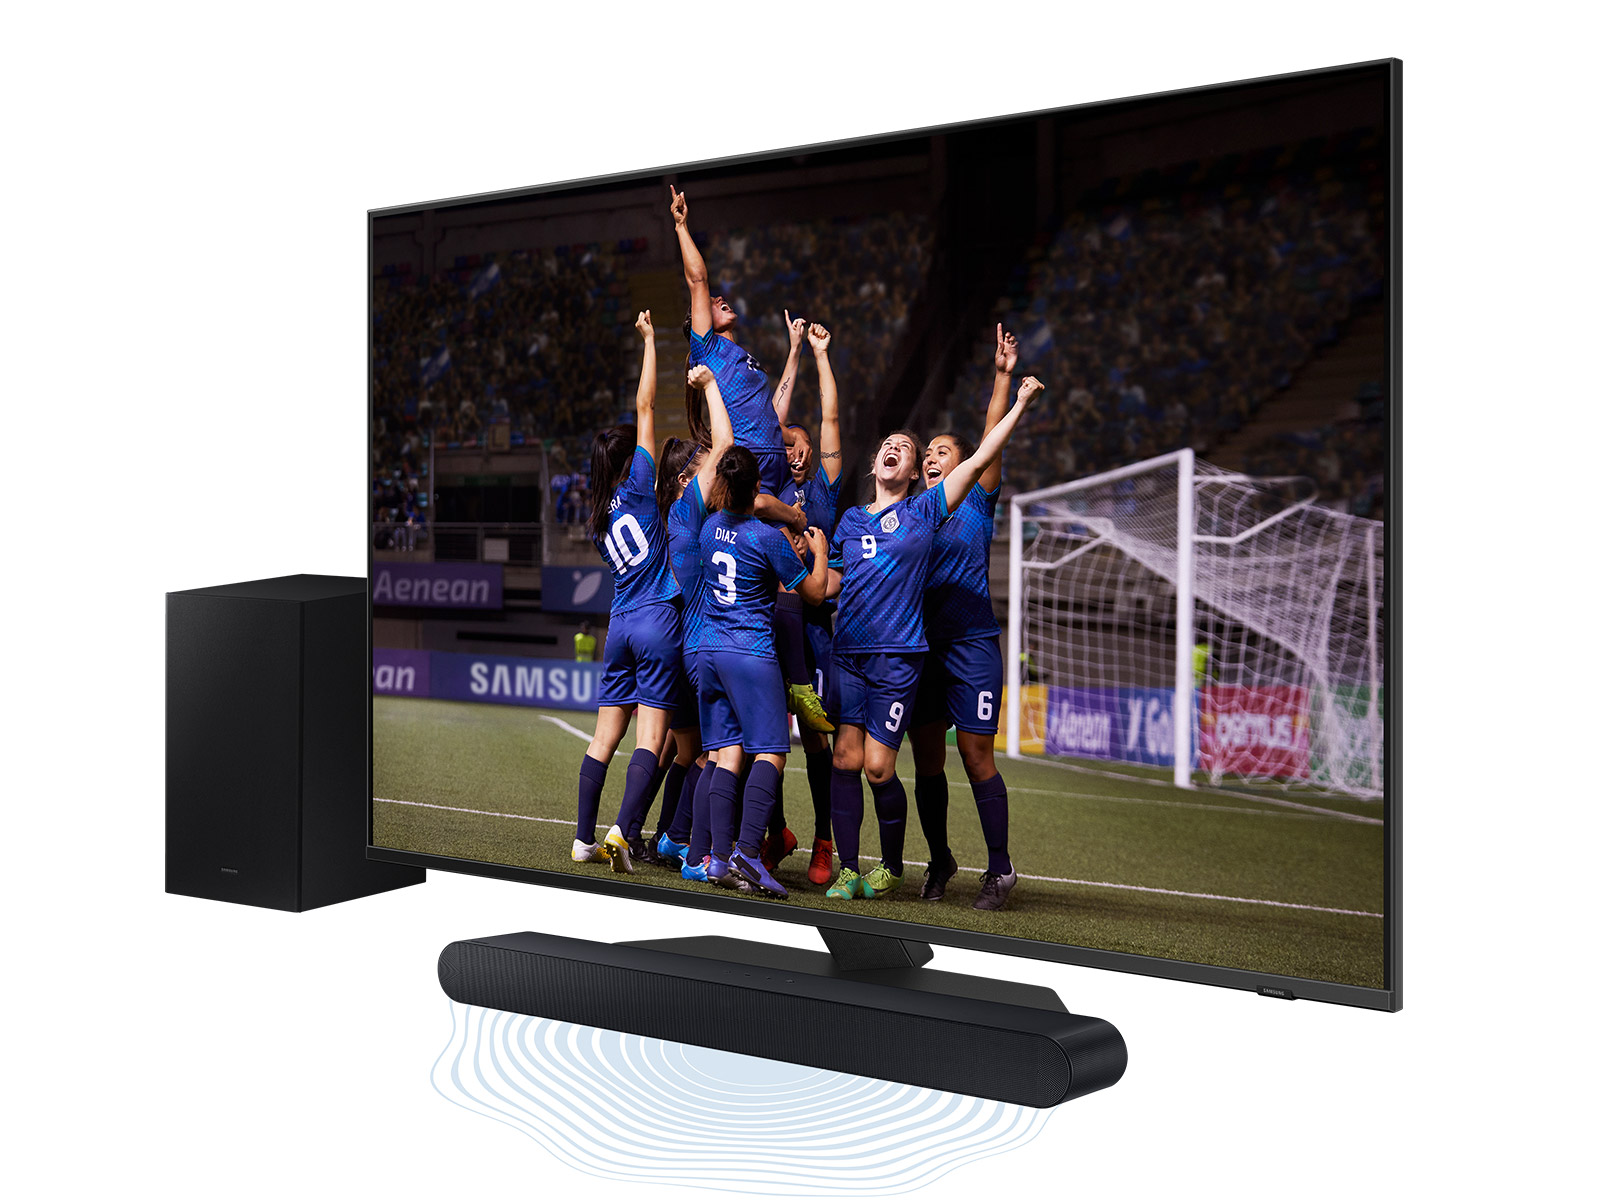 32” Class Q6DA QLED 4K Smart TV (2021) TVs - QN32Q6DAAFXZA